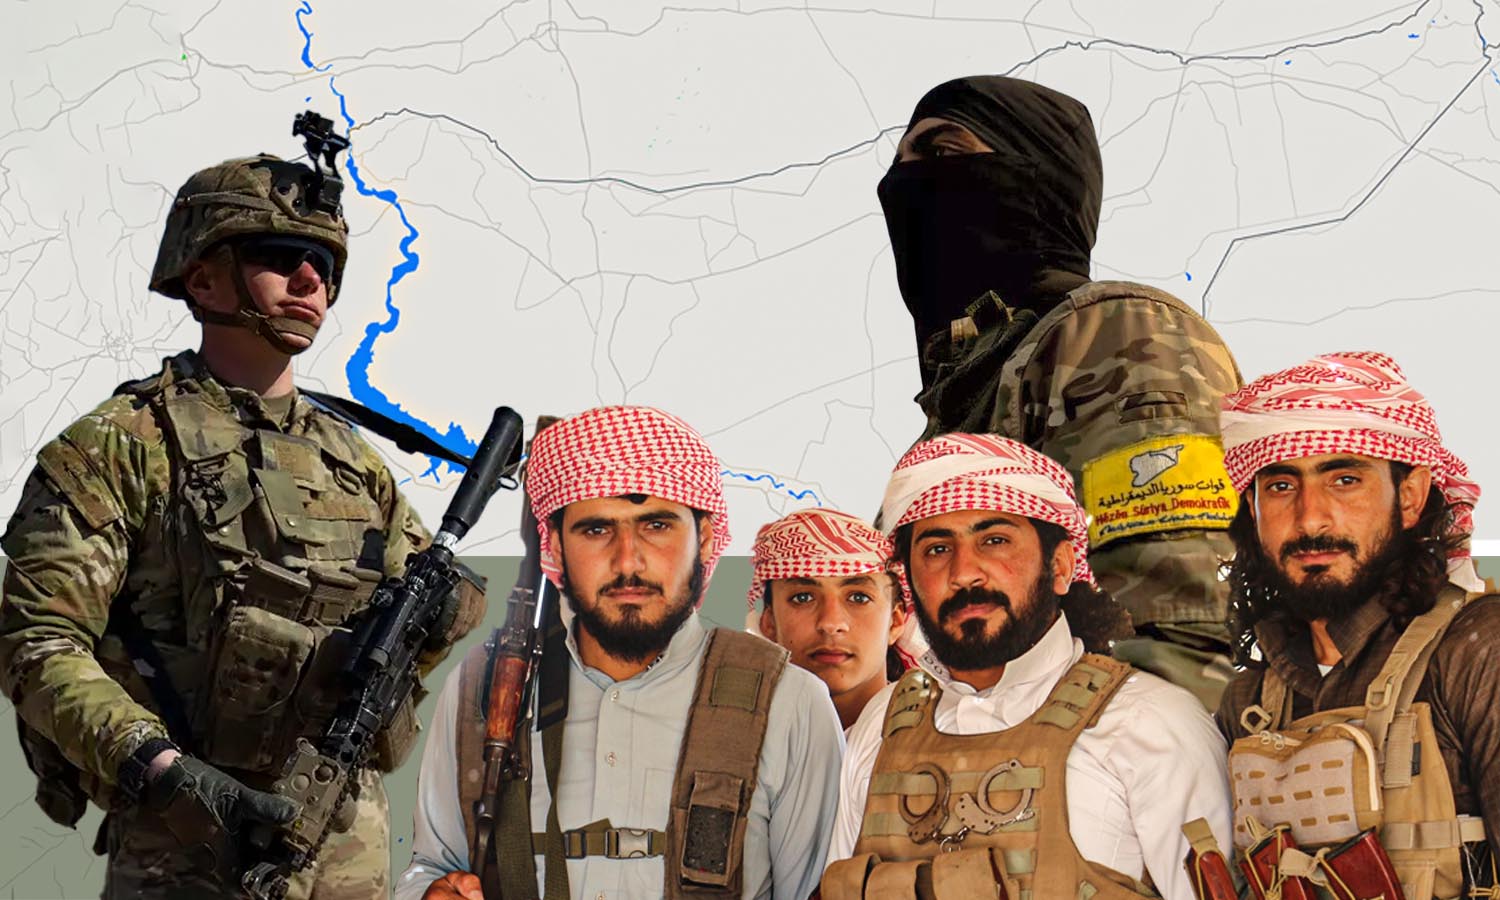 مقاتلون من أبناء العشائر ومقاتل من "قوات سوريا الديمقراطية" (قسد) وجندي أمريكي (تعديل عنب بلدي)